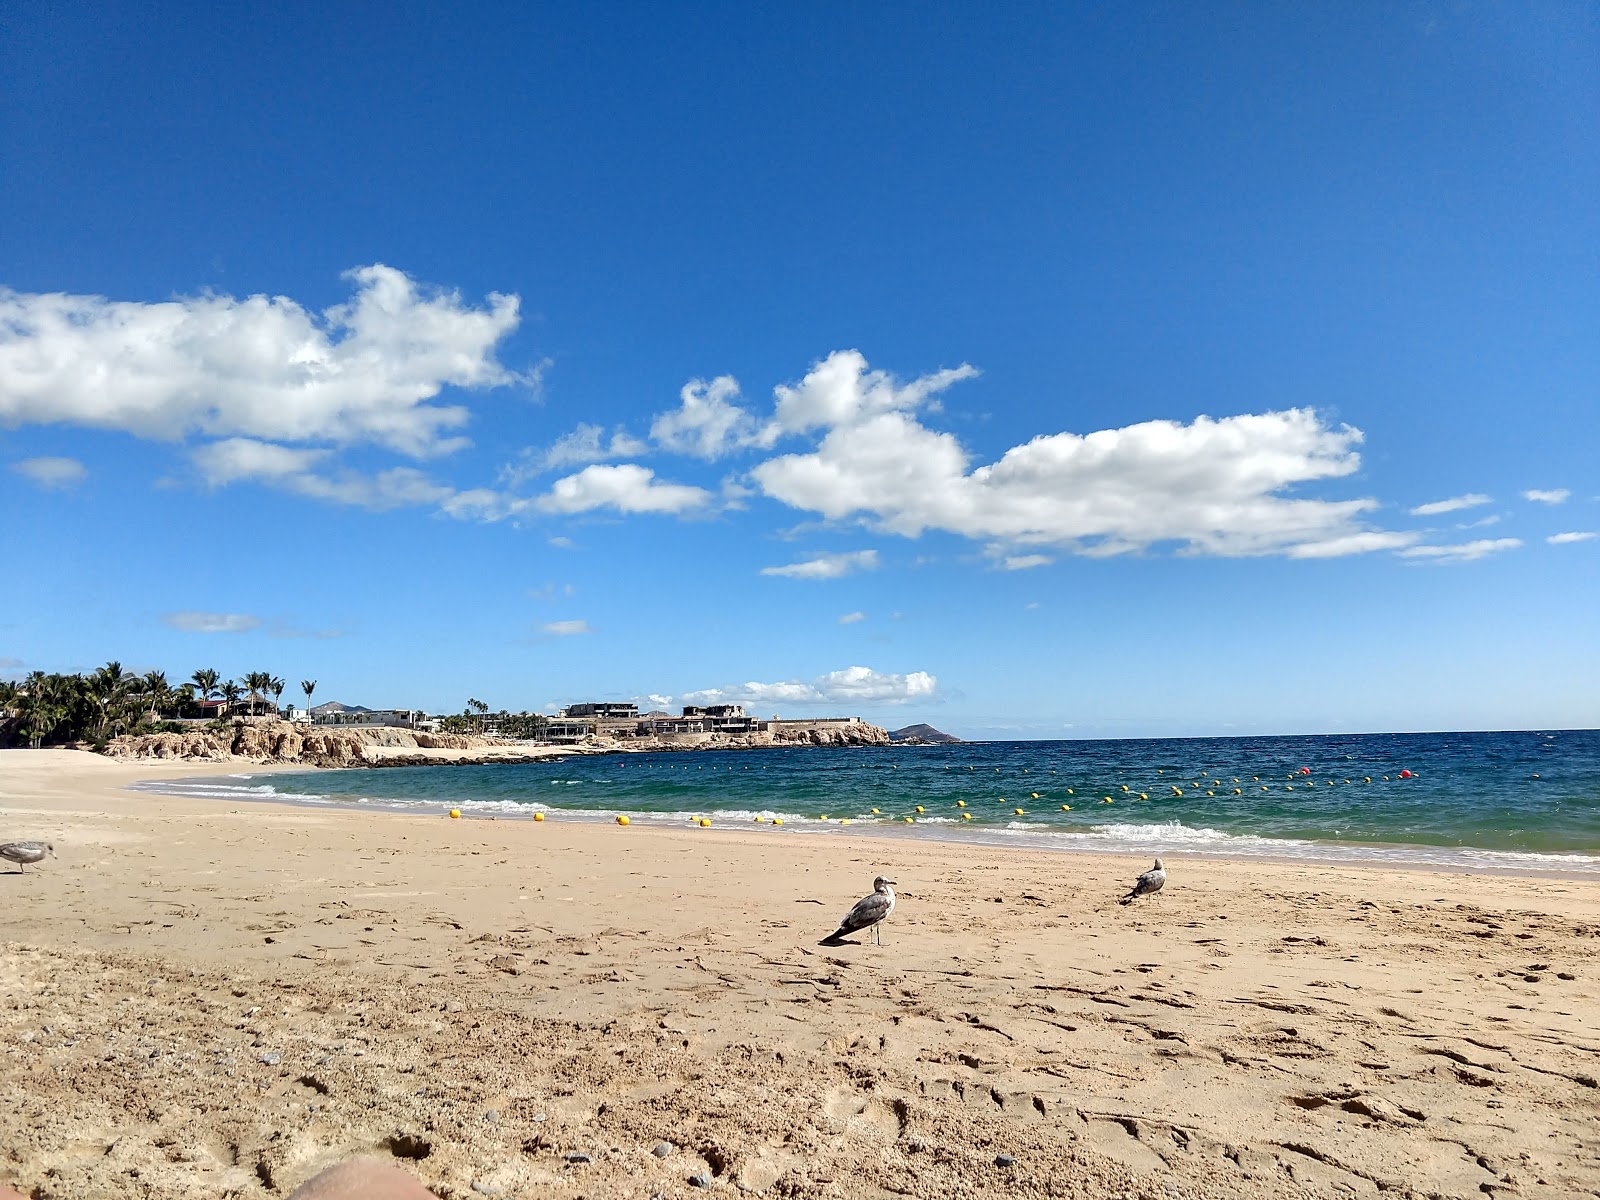 Fotografie cu Playa el Chileno cu o suprafață de apa pură turcoaz